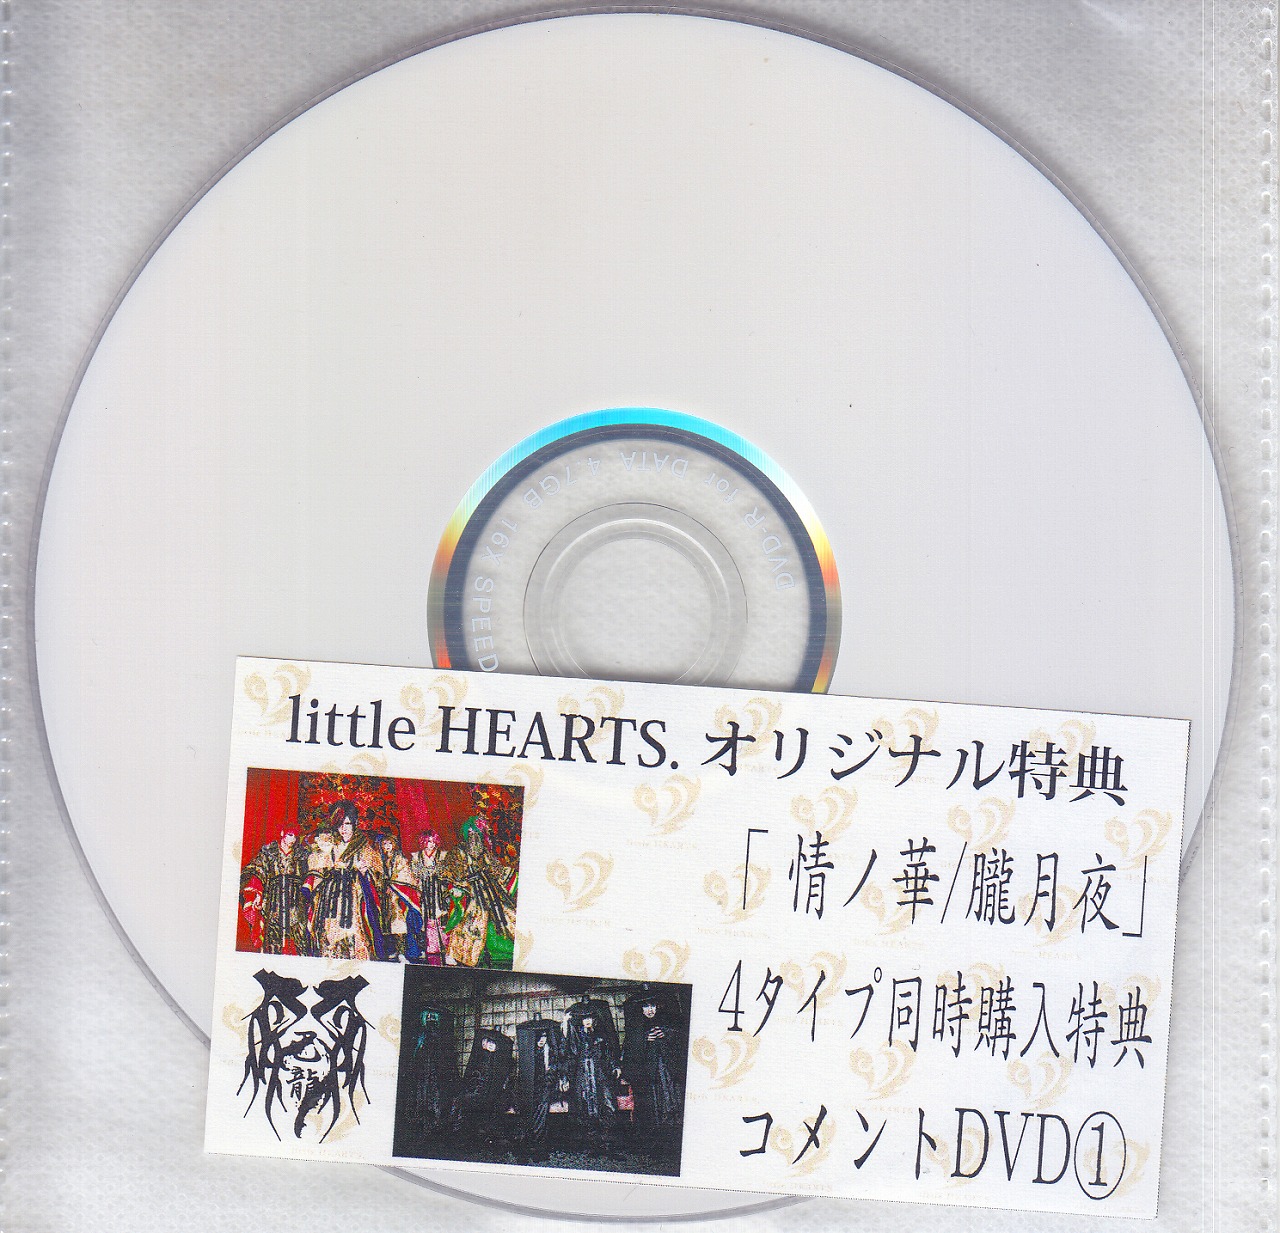 己龍 ( キリュウ )  の DVD 【little HEARTS.】情ノ華/朧月夜 4タイプ同時購入特典コメントDVD①